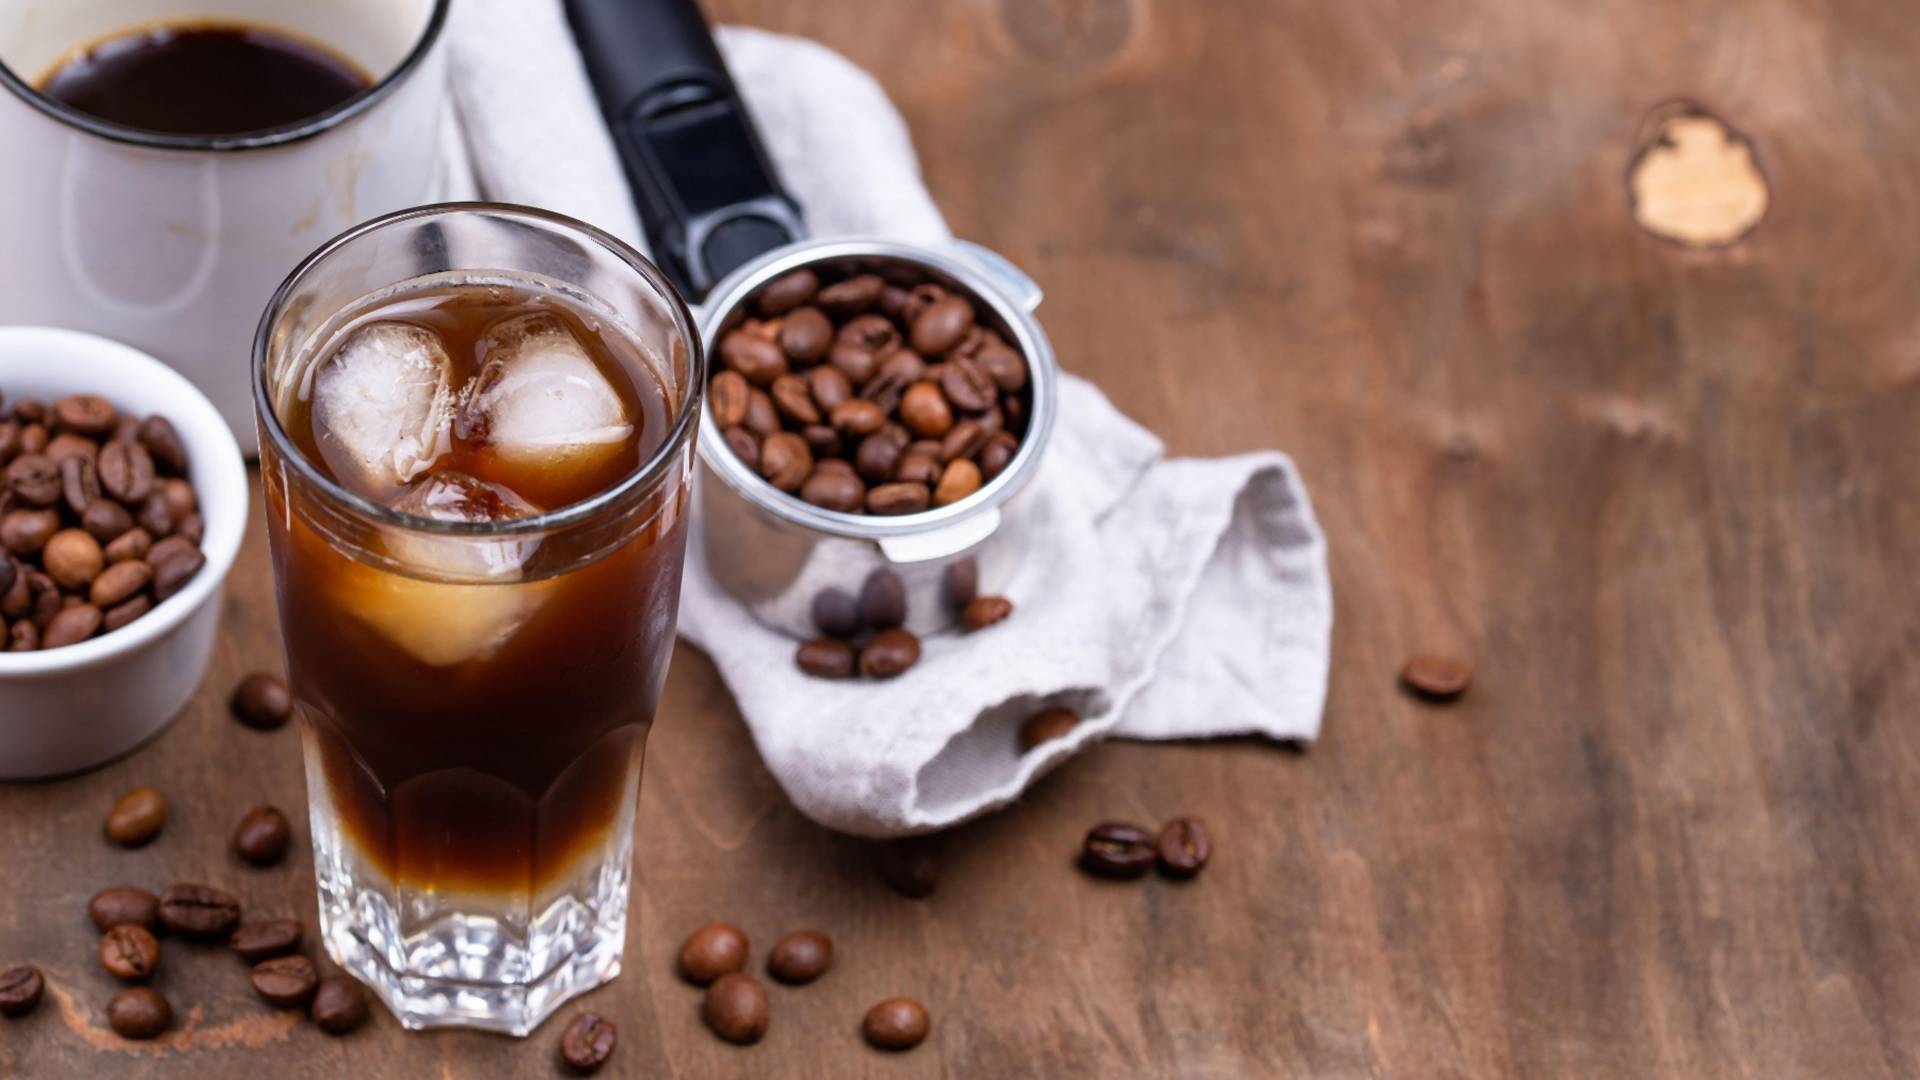 Tonik kafa je novi trend na društvenim mrežama: bolje od irish coffee, a jednostavna za pravljenje